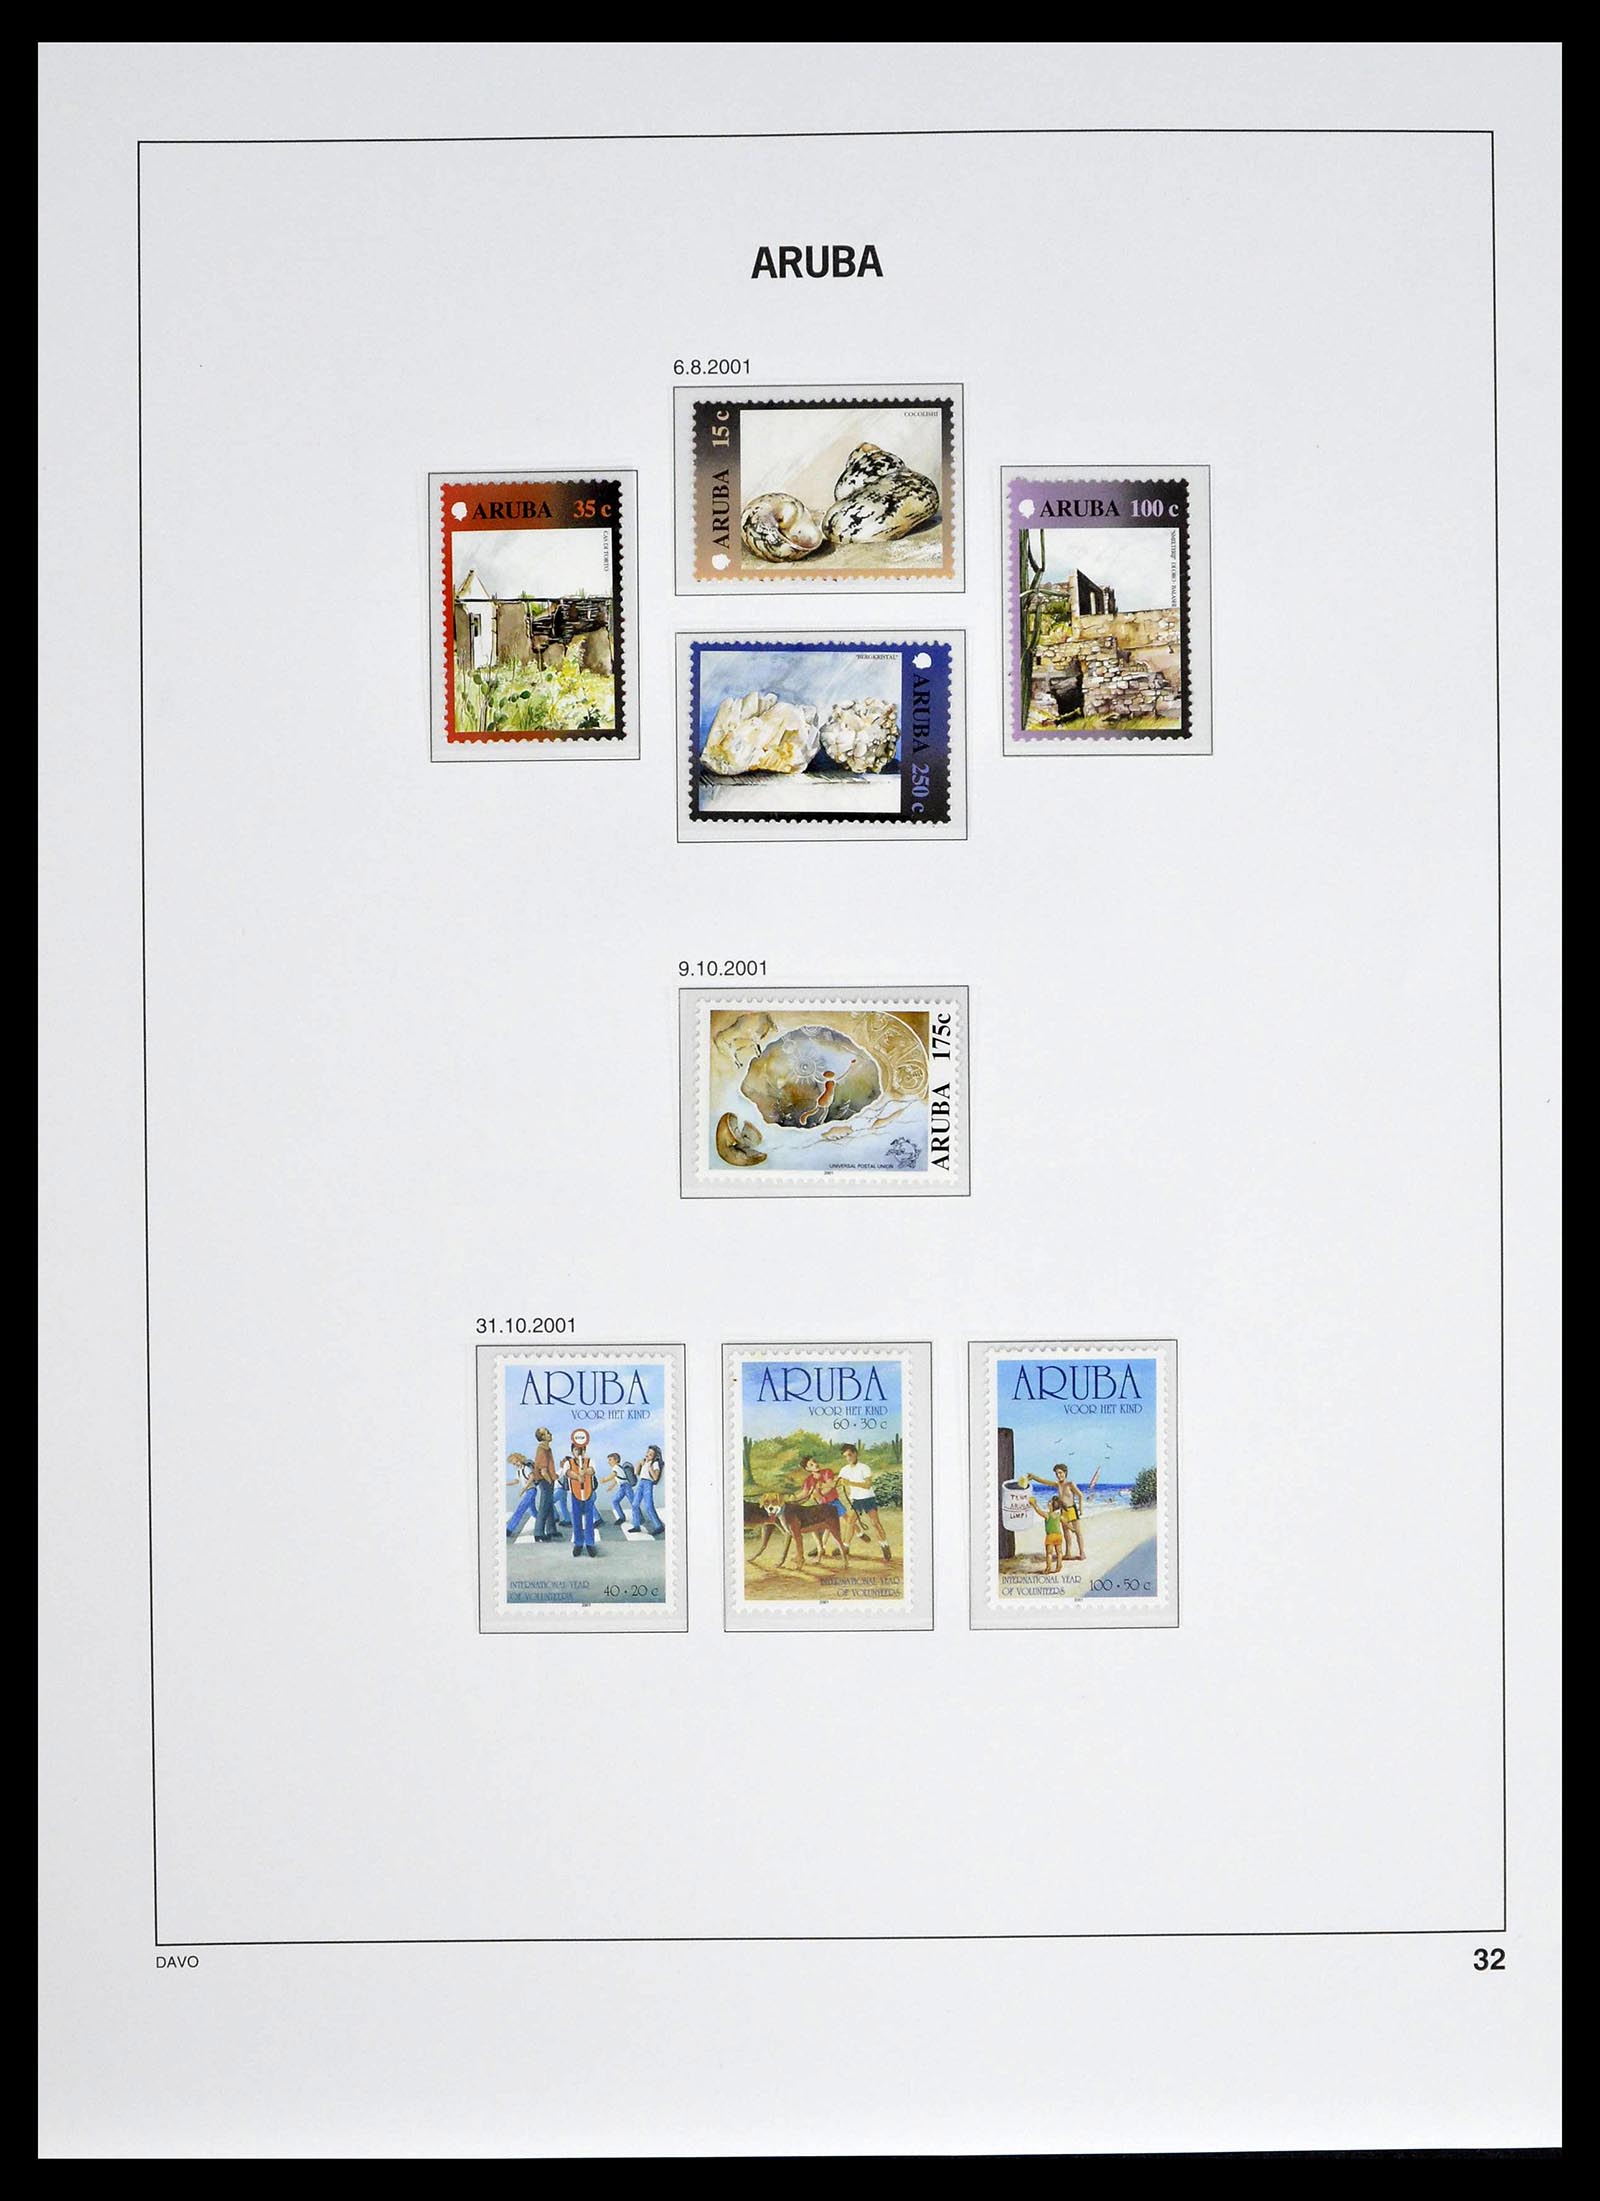 39361 0032 - Stamp collection 39361 Aruba 1986-2013.